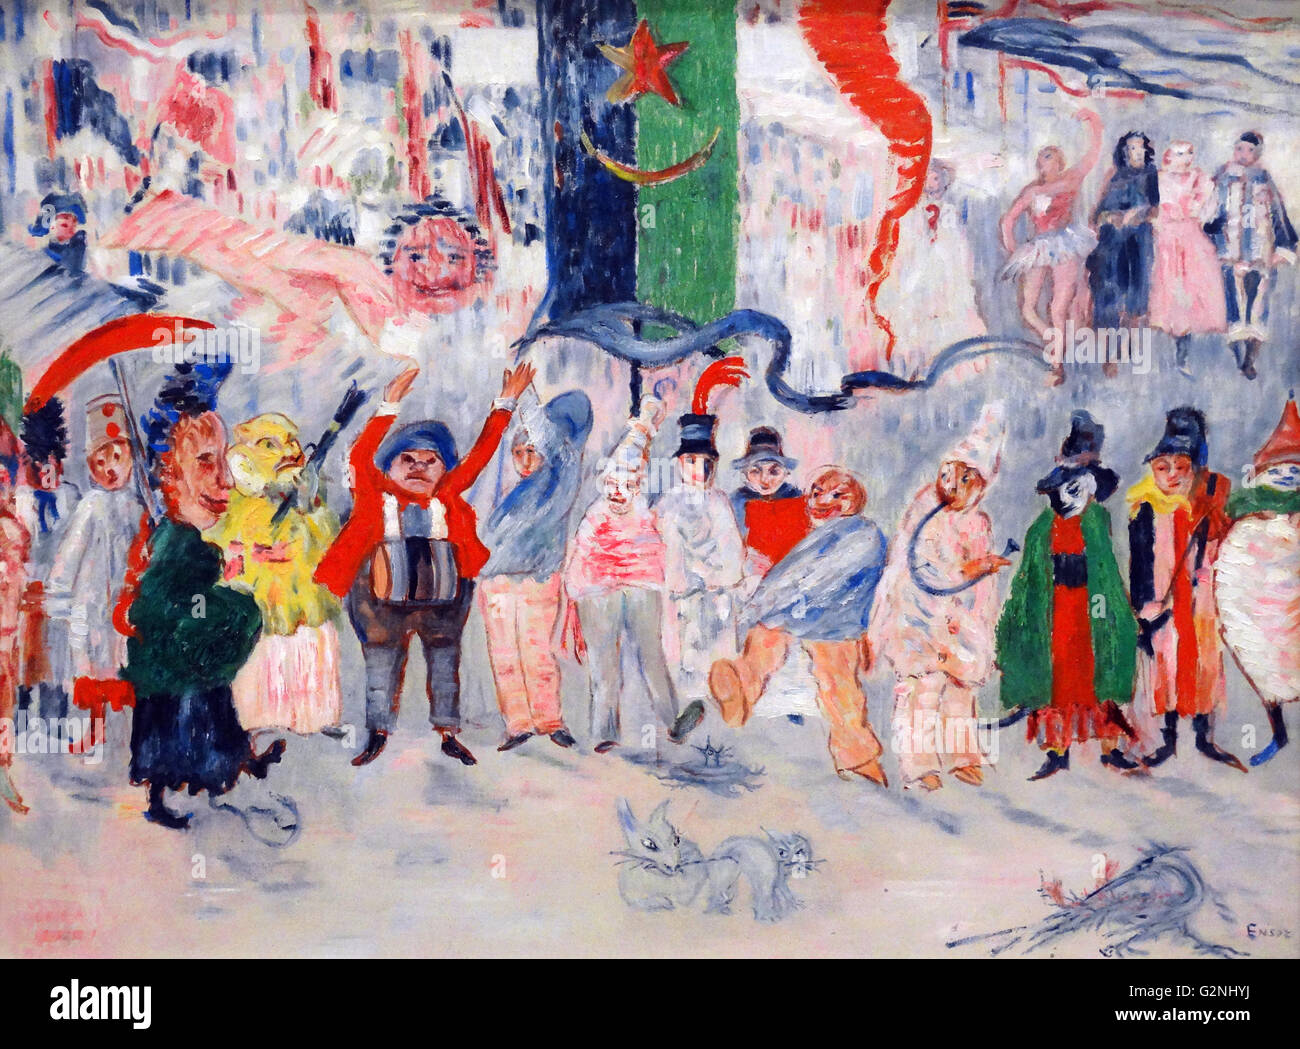 Il carnevale nelle Fiandre olio su tela) di James Ensor (1860-1949) era un pittore belga e incisore, un importante influsso sull'espressionismo e surrealismo che vivevano in Ostenda per quasi tutta la sua vita. Foto Stock